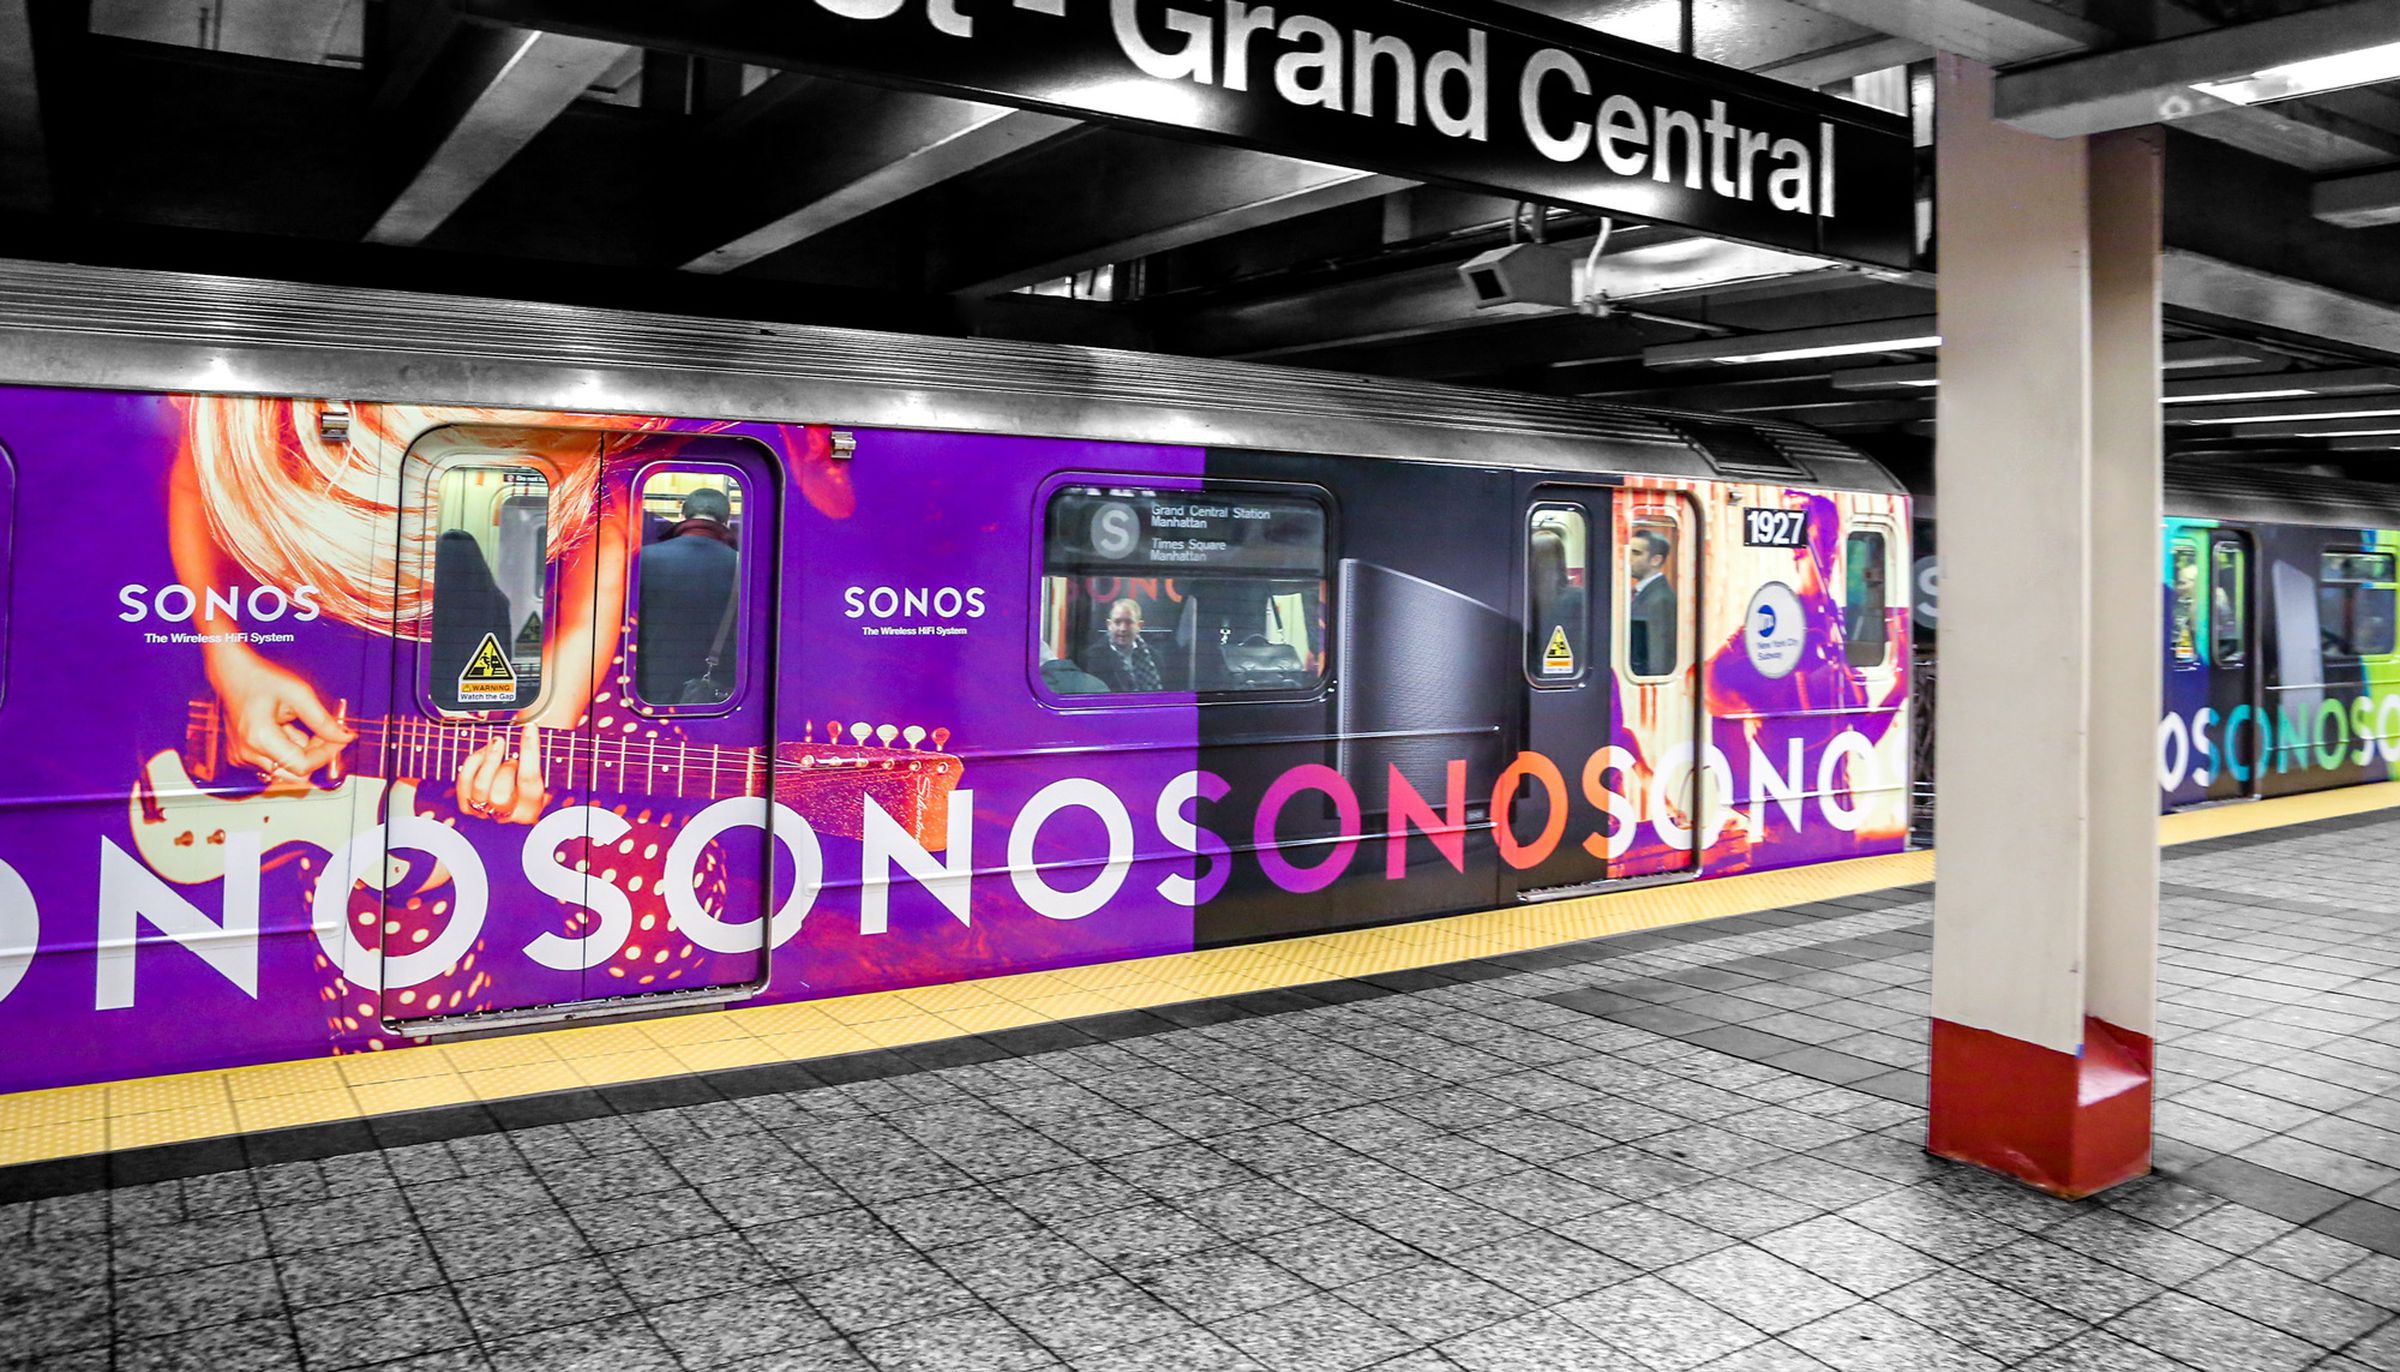 Sonos subway car